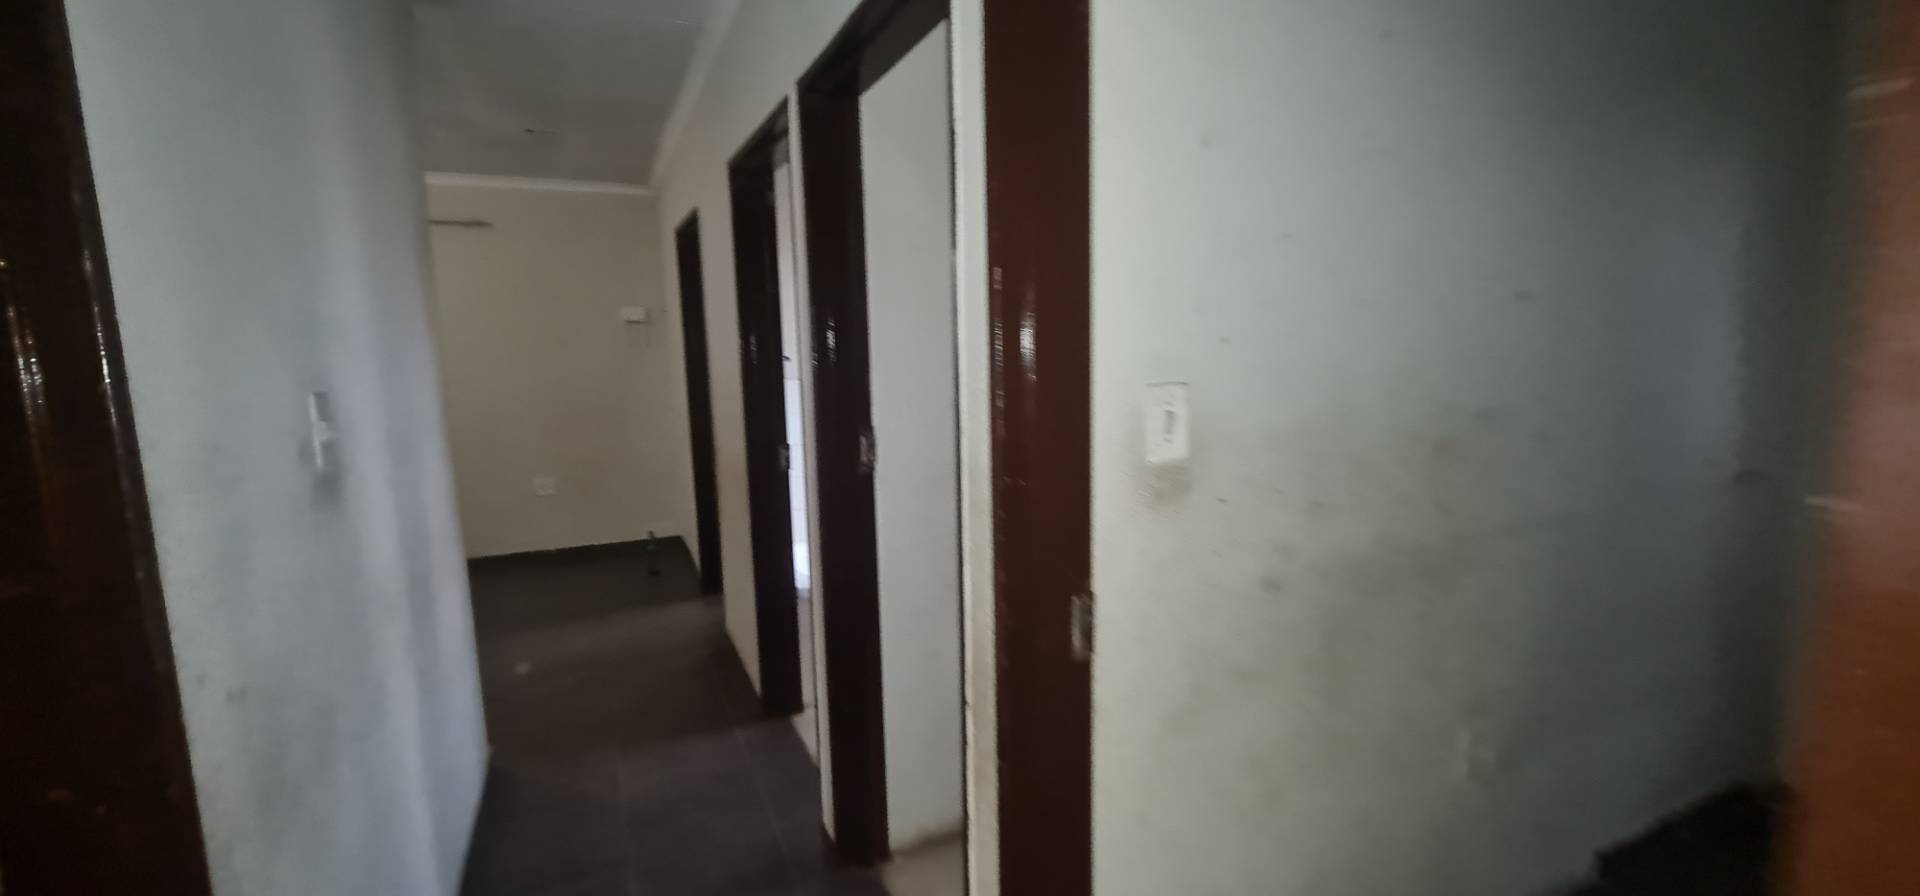 To Let 3 Bedroom Property for Rent in Vosloorus Gauteng